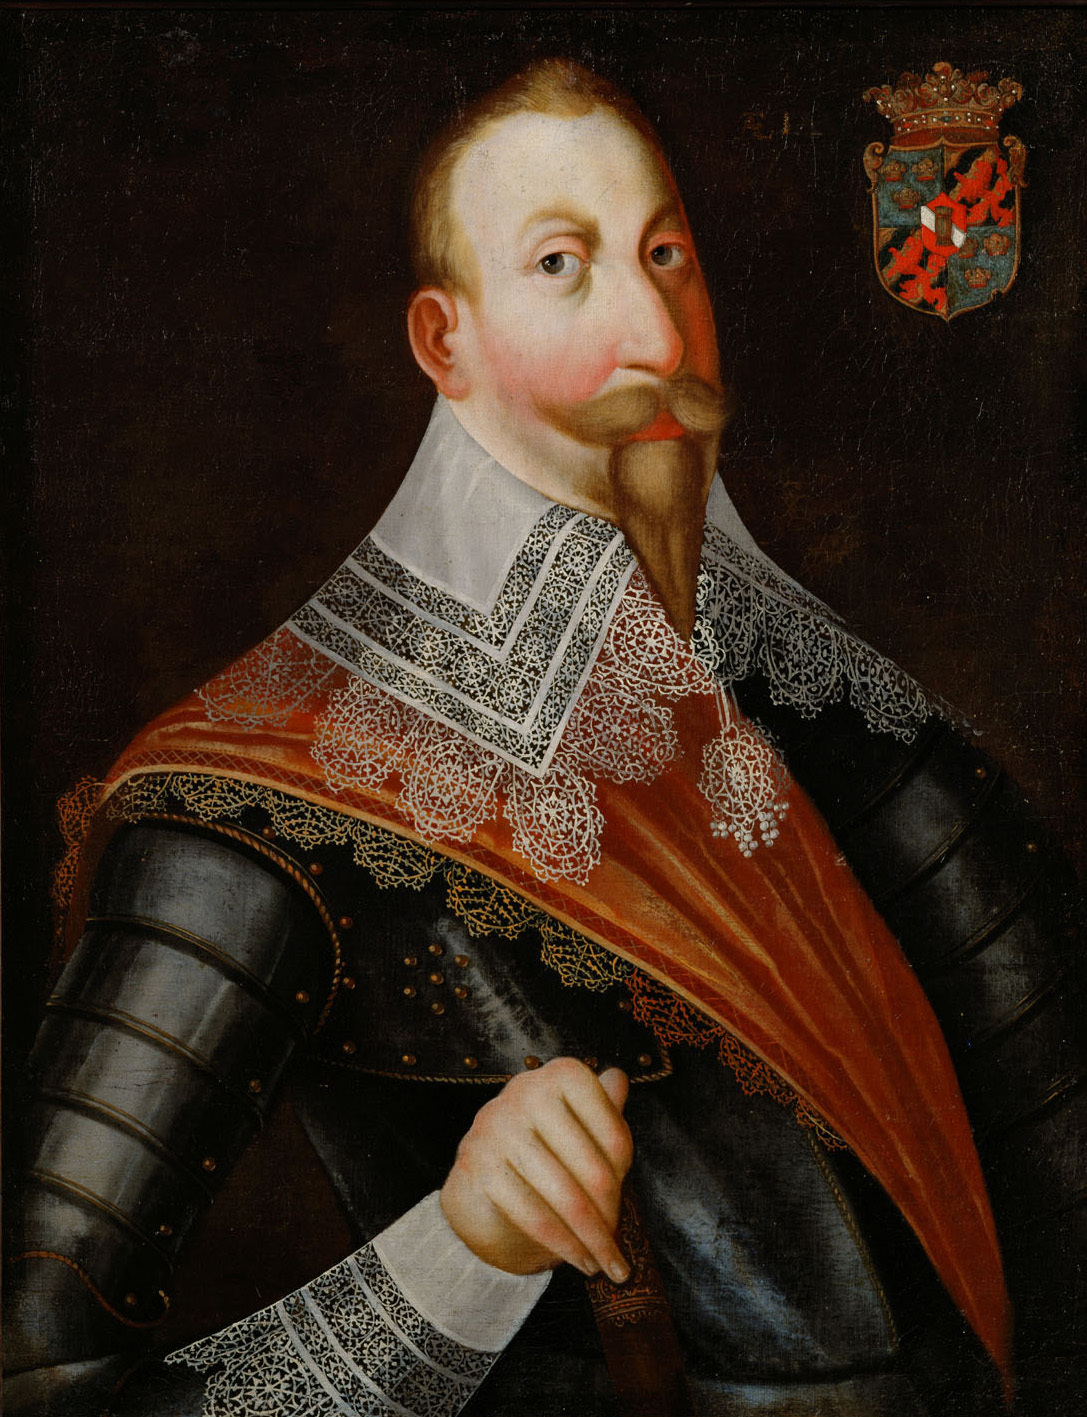 Deutsch | König Gustav II. Adolf (1594-1632) von Schweden, Halbfigur | Displayed motifs: Coat of arms, Human face, Clothing, Footwear, Person, Man, Fashion accessory, 